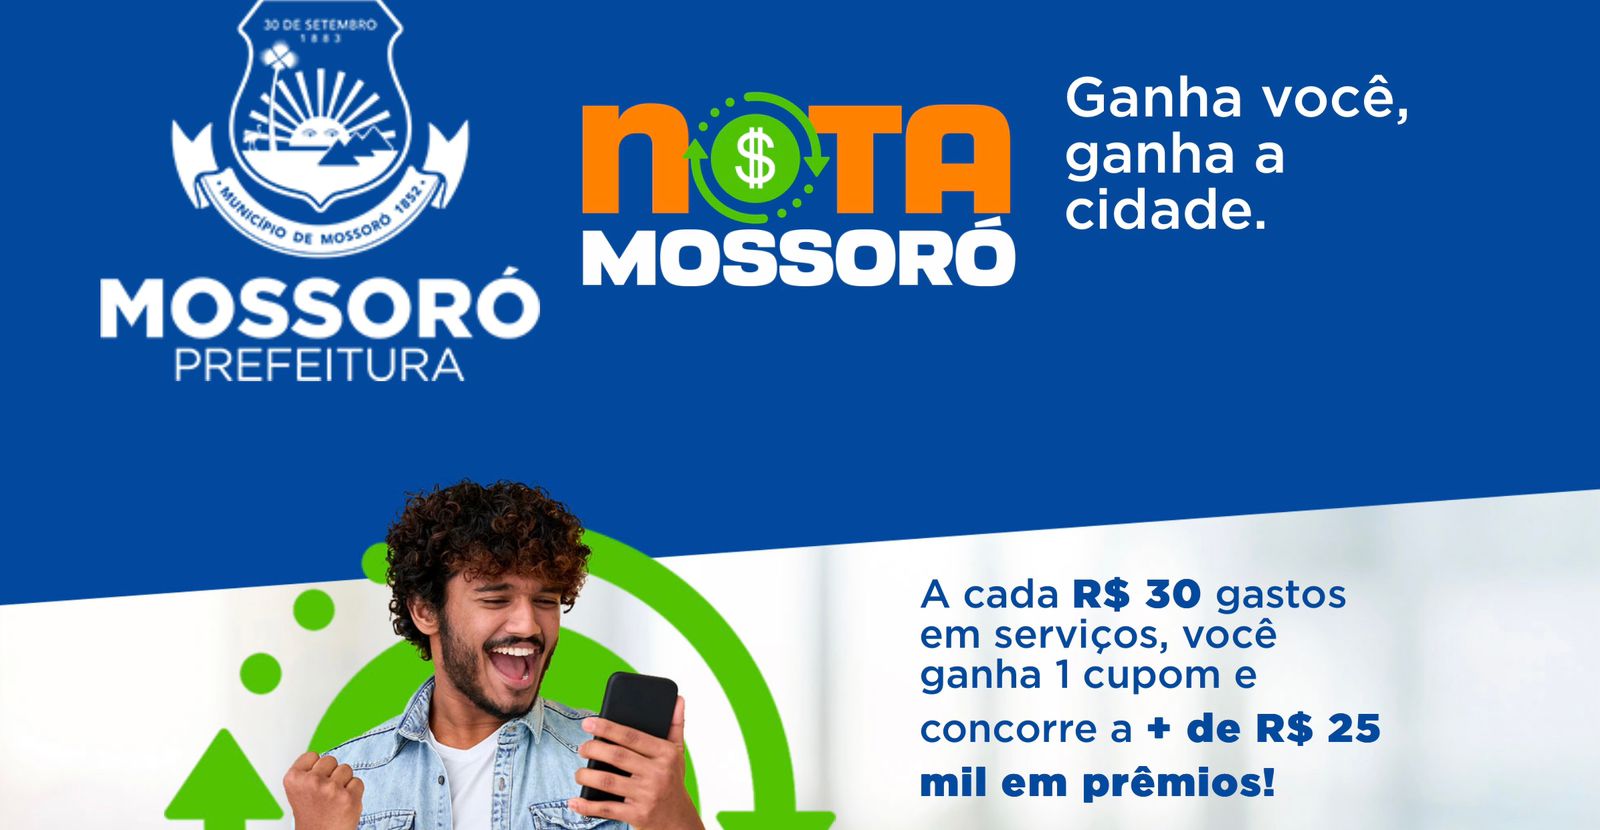 Prefeitura lança programa "Nota Mossoró" com prêmios de mais de R$ 25 mil